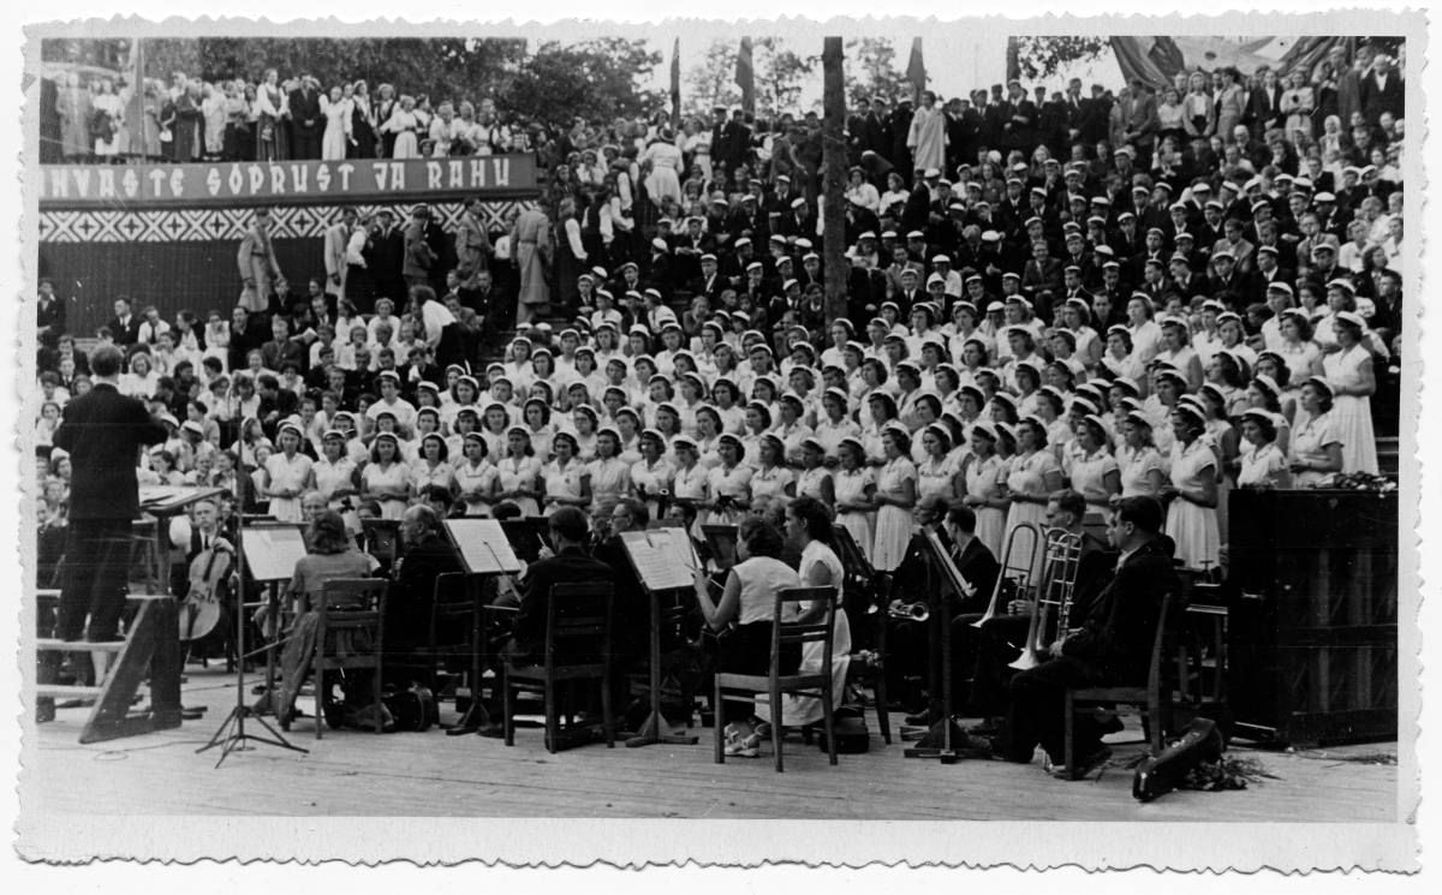 Esimene üliõpilaslaulupidu Tartus 1956. aasta 8. juulil. Esineb TRÜ naiskoor. Dirigeerib Igor Graps. Keskel musitseerivad ülikooli sümfooniaorkestri koosseisus Alo Ritsing ja Udo Kolk.